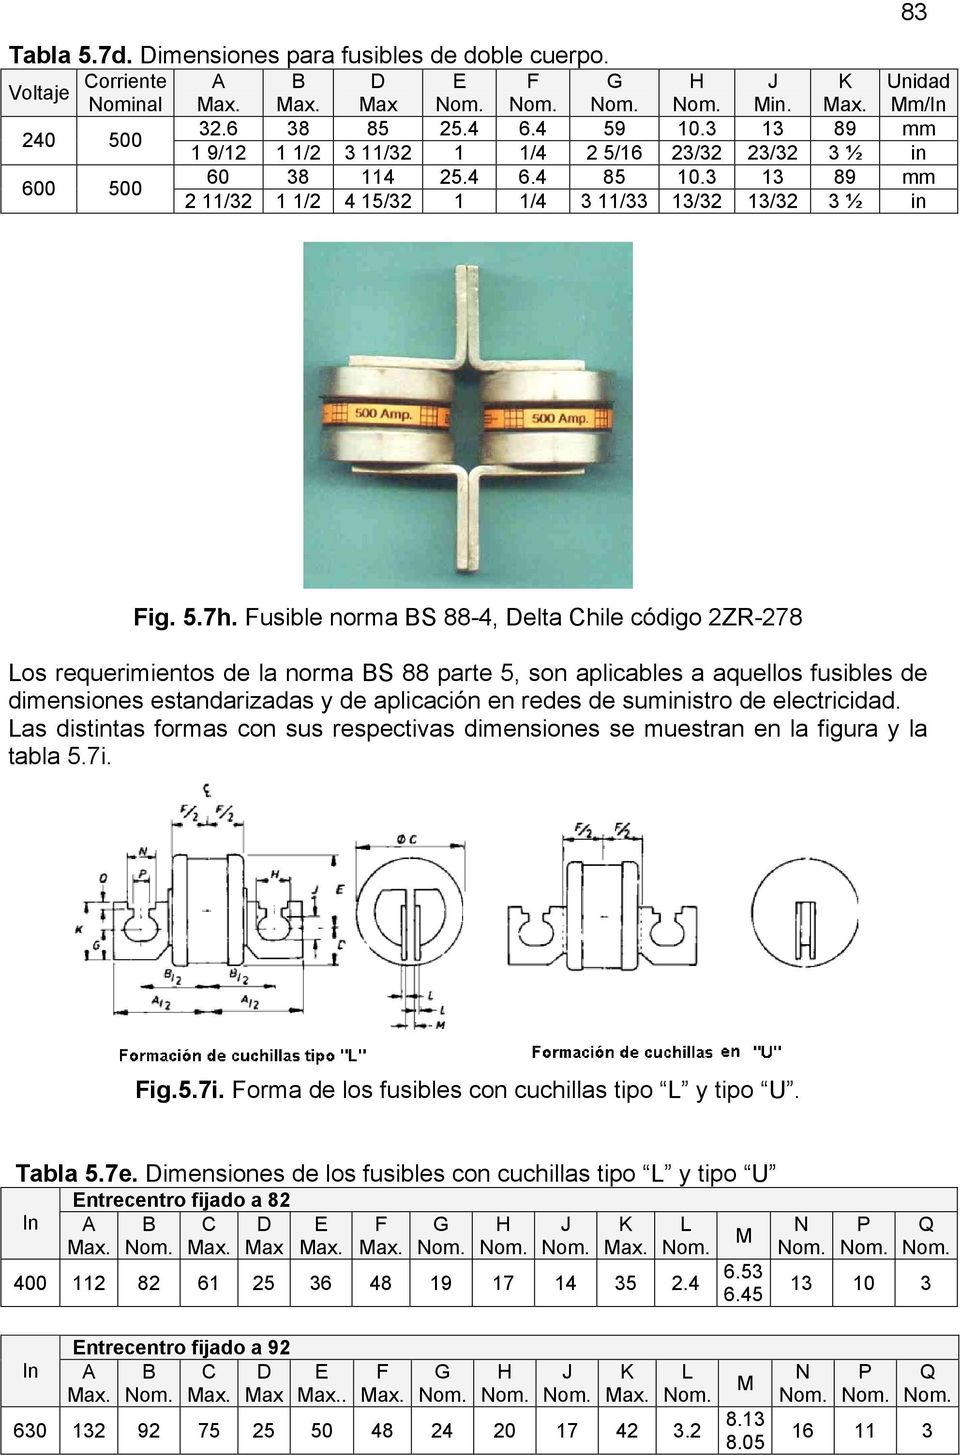 Fusible norma BS 88-4, Delta Chile código 2ZR-278 Los requerimientos de la norma BS 88 parte 5, son aplicables a aquellos fusibles de dimensiones estandarizadas y de aplicación en redes de suministro